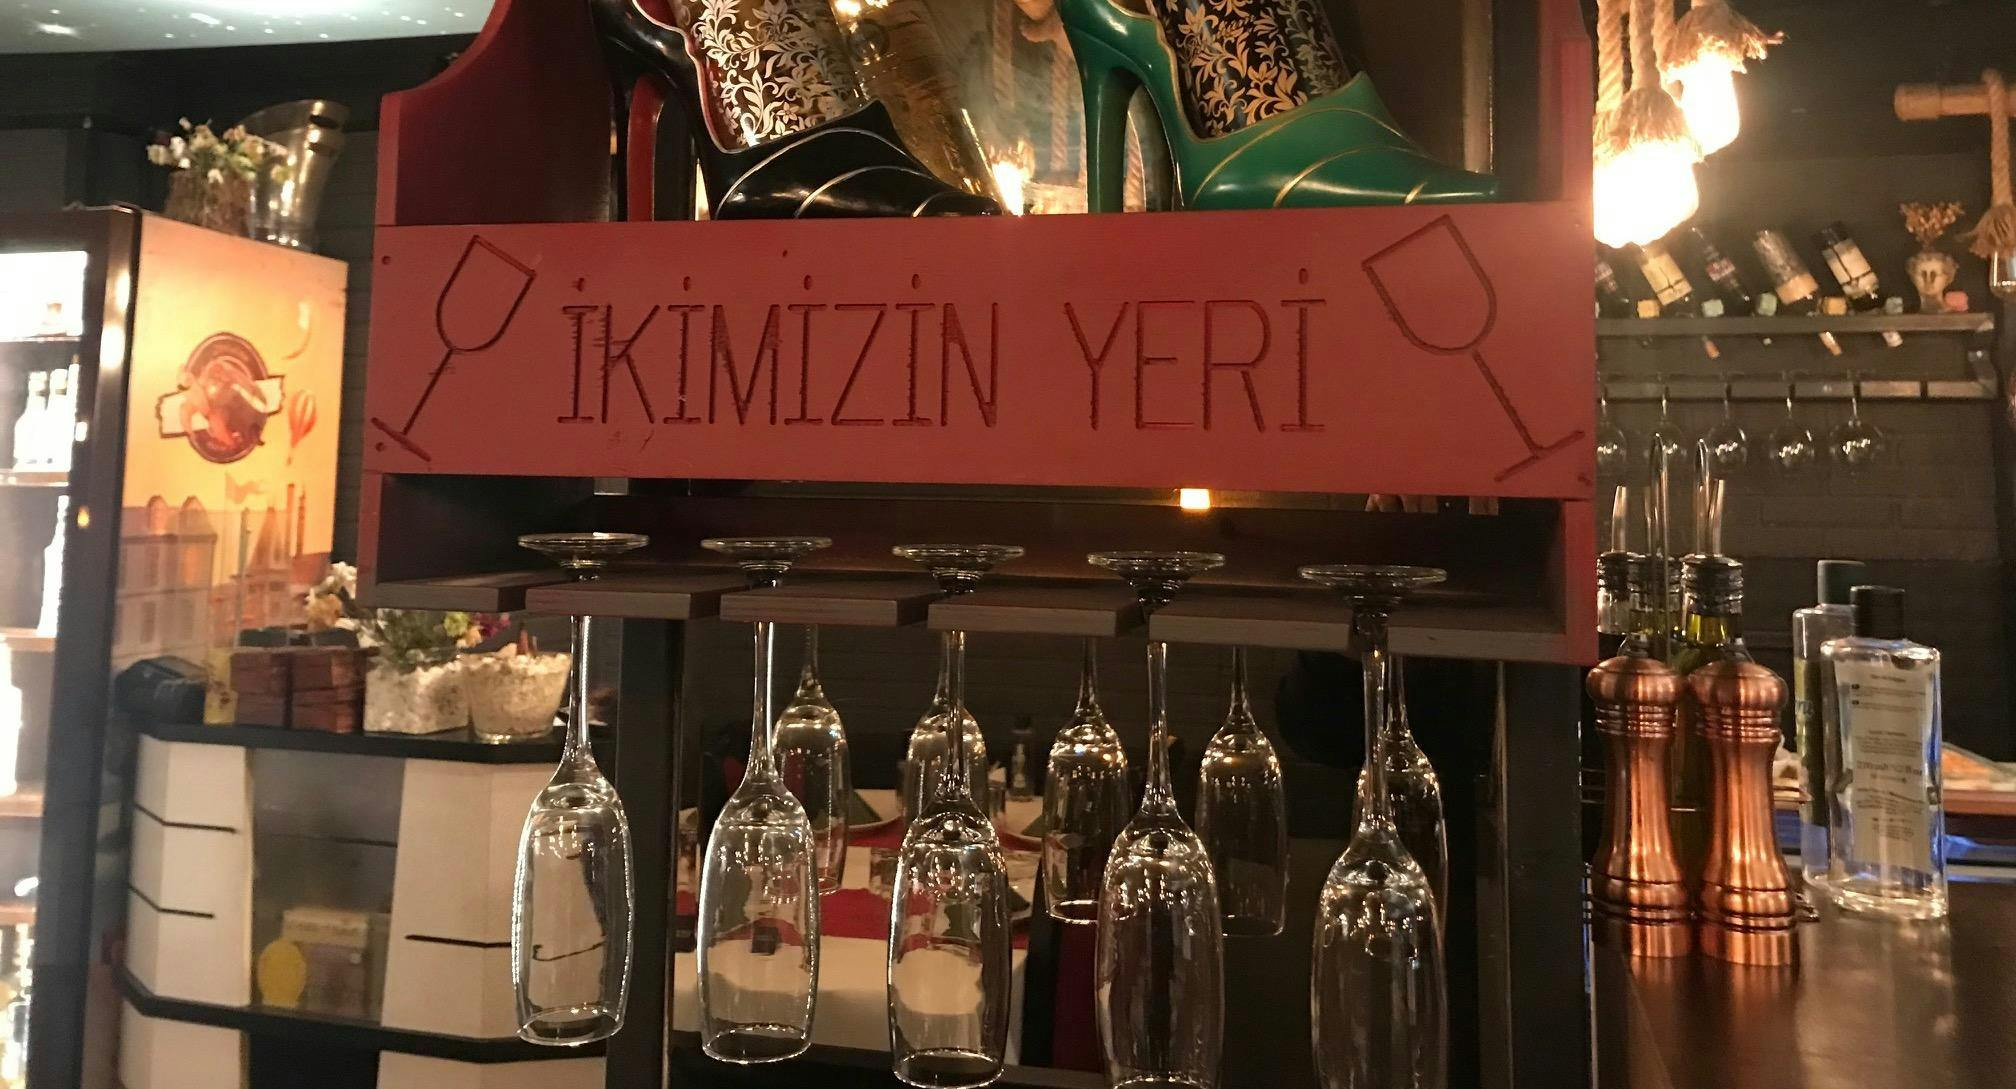 Photo of restaurant İkimizin Yeri Ocakbaşı in Şişli, Istanbul